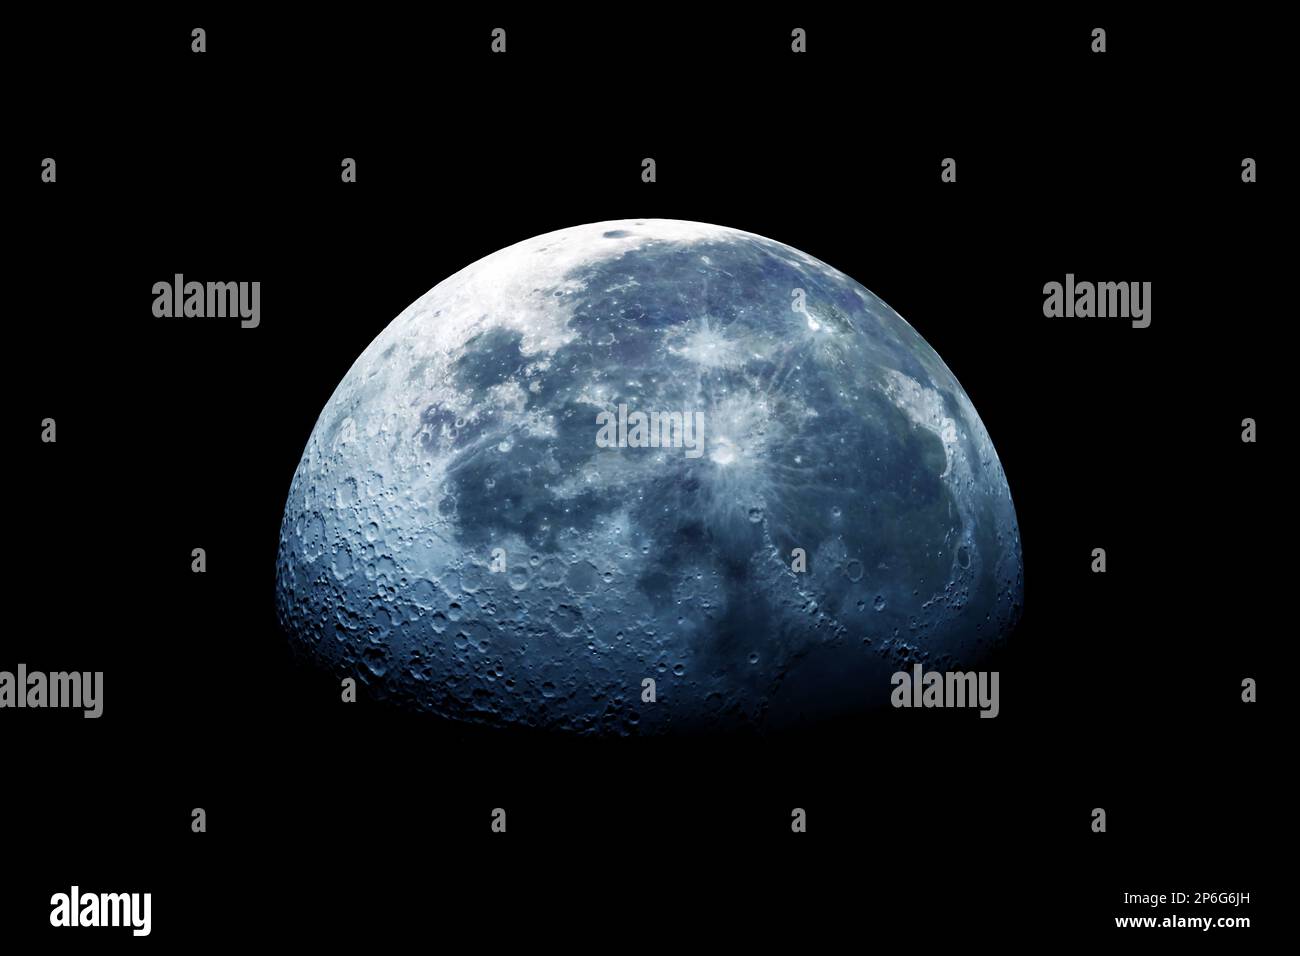 La lune dans l'espace sur un fond sombre. Éléments de cette image fournissant NASA. Photo de haute qualité Banque D'Images